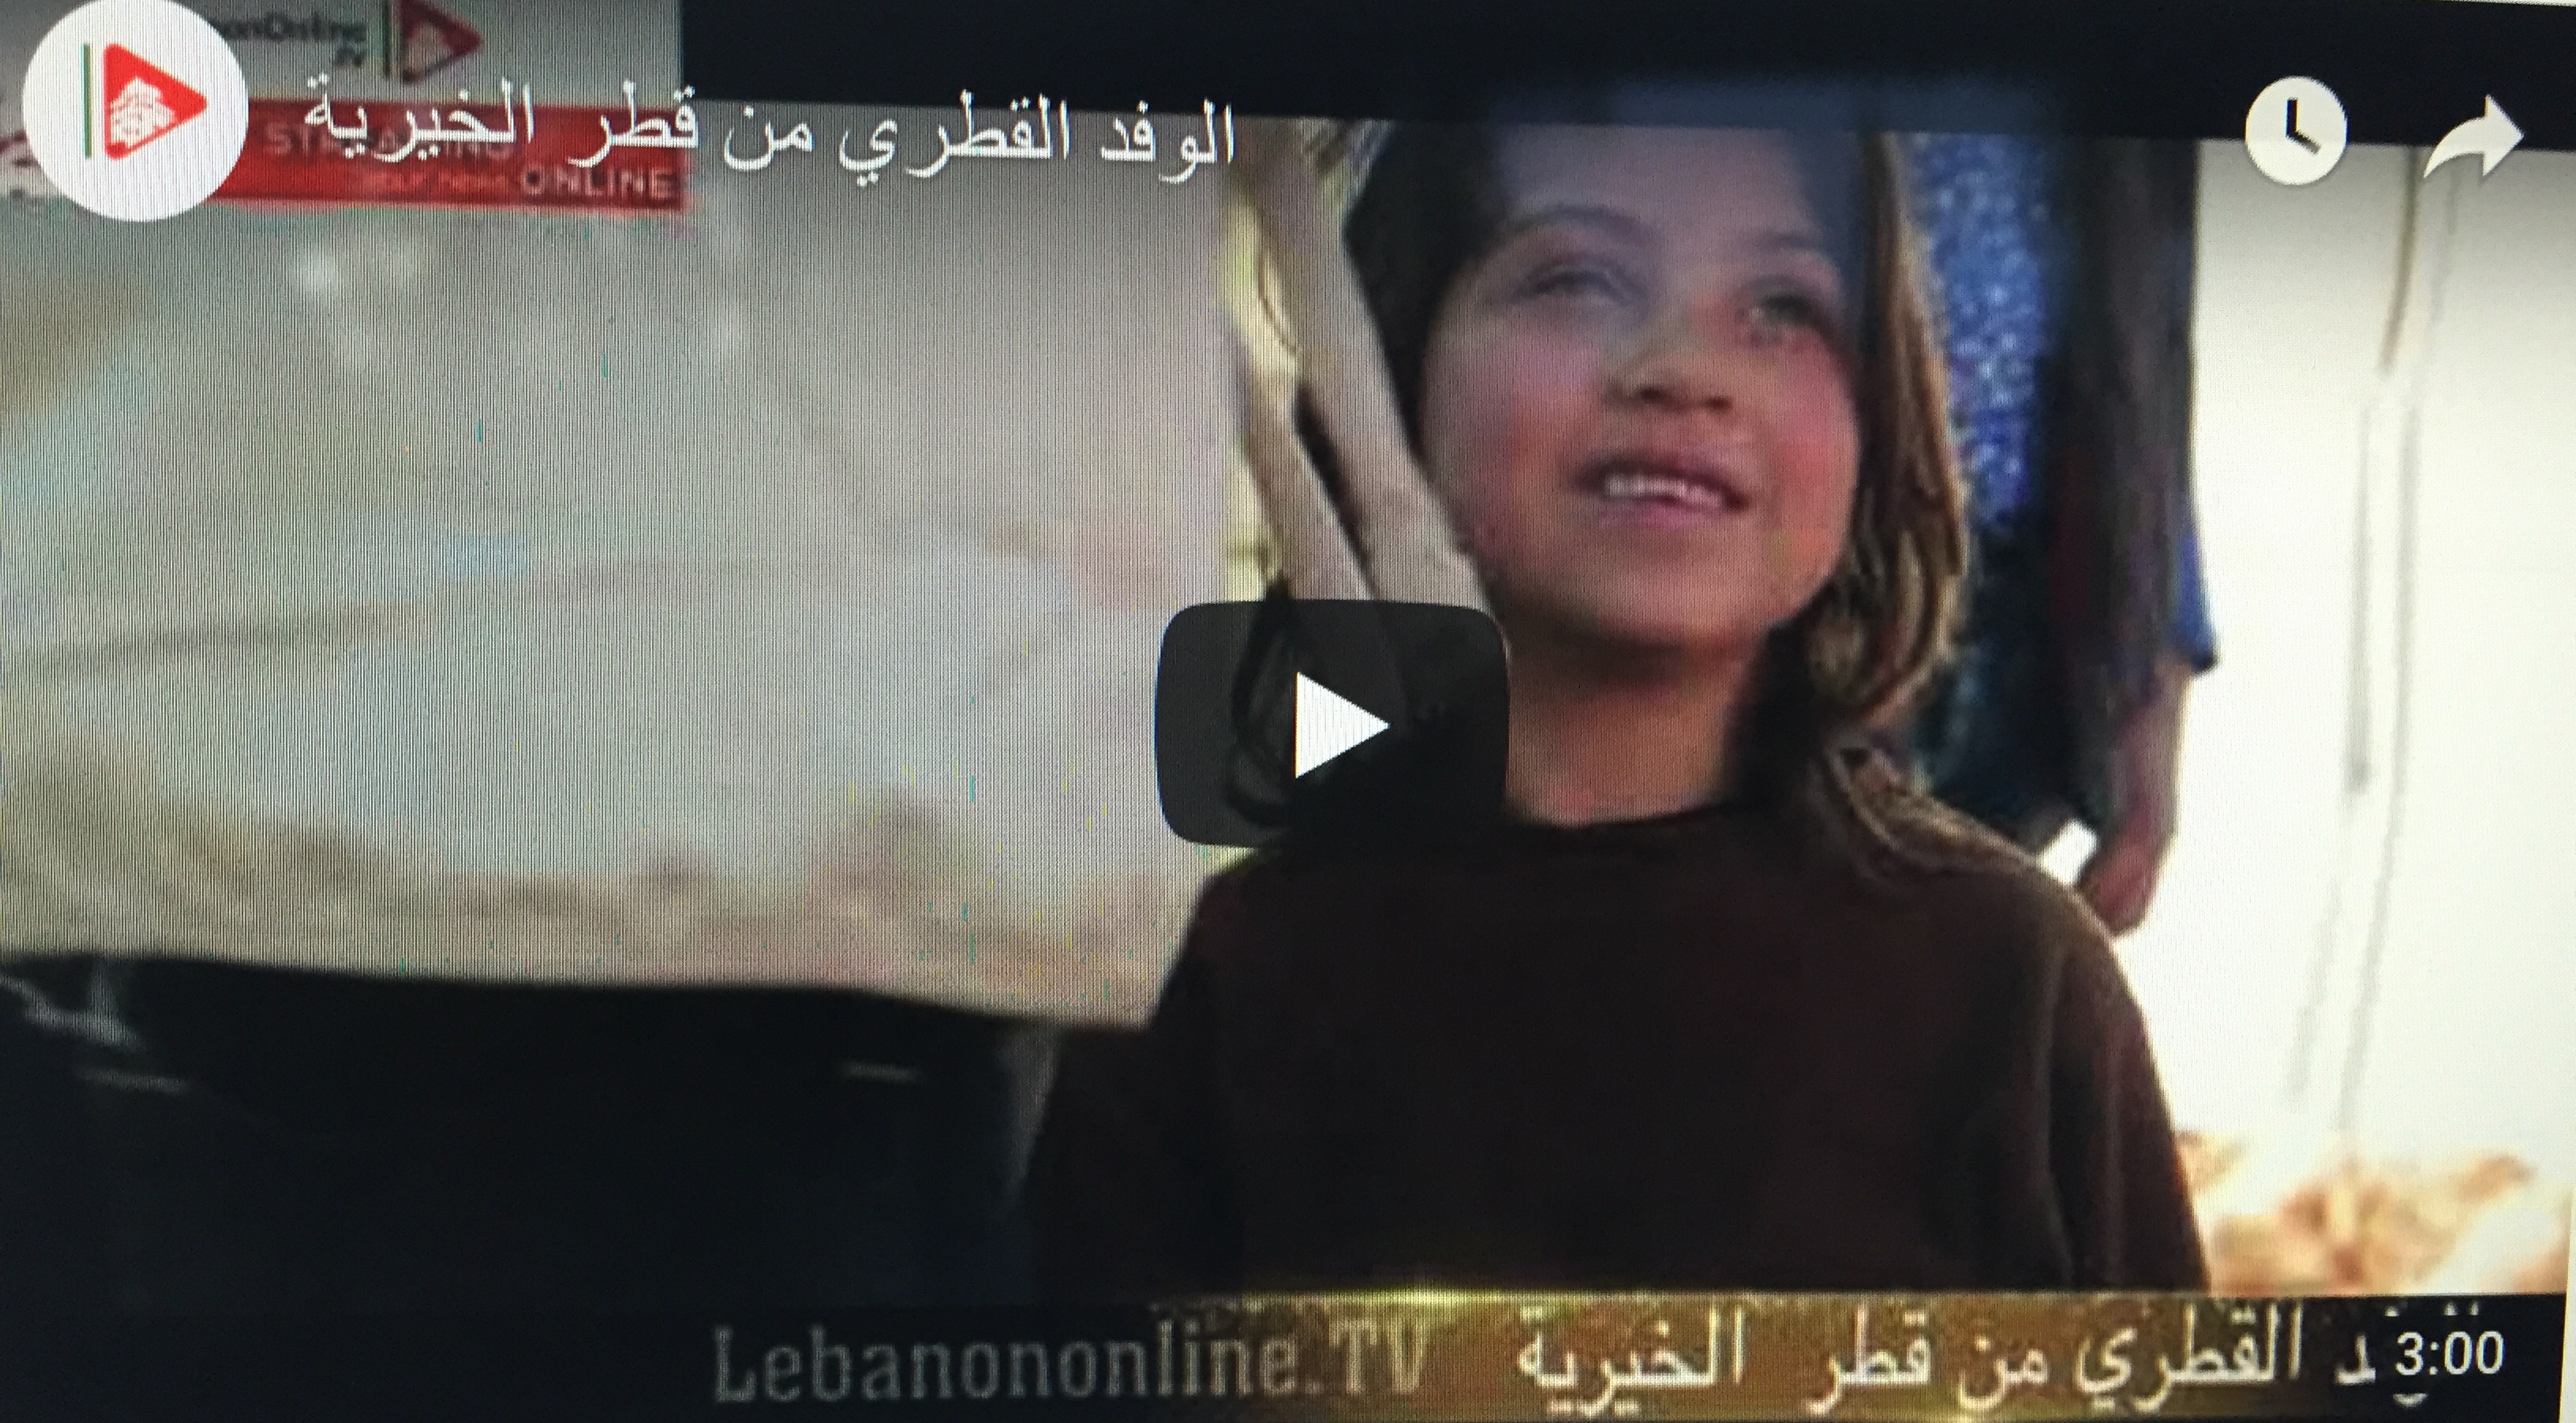 خاص بالفيديو :الوفد القطري من قطر الخيرية